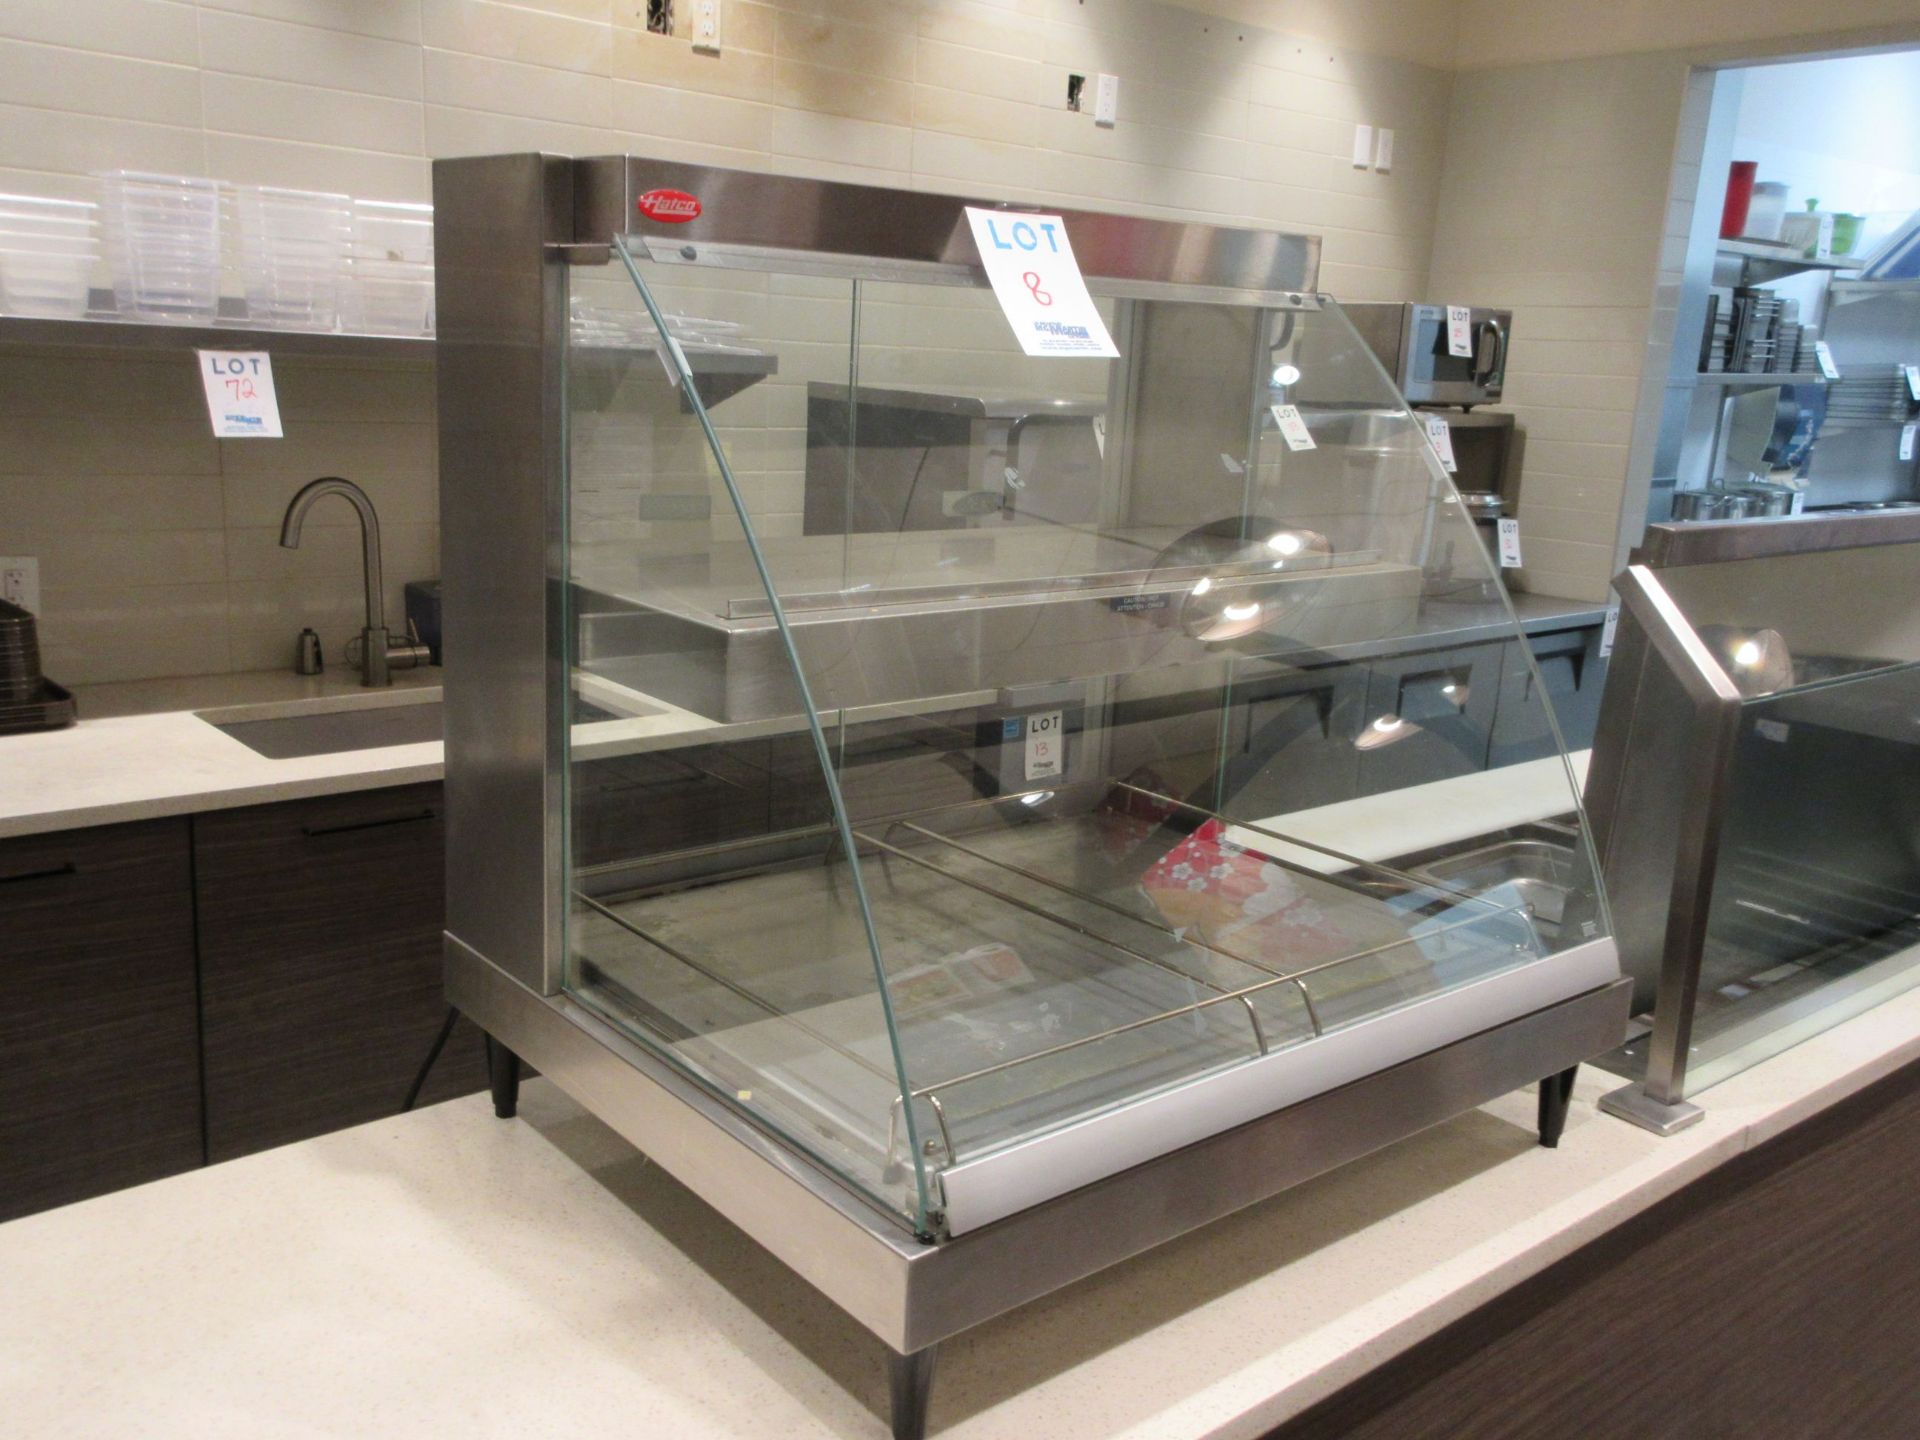 HATCO food warmer glass display unit, Mod: GRCD-2PD, serial # 3944171827, aprox 31"w x 26" d x 32"